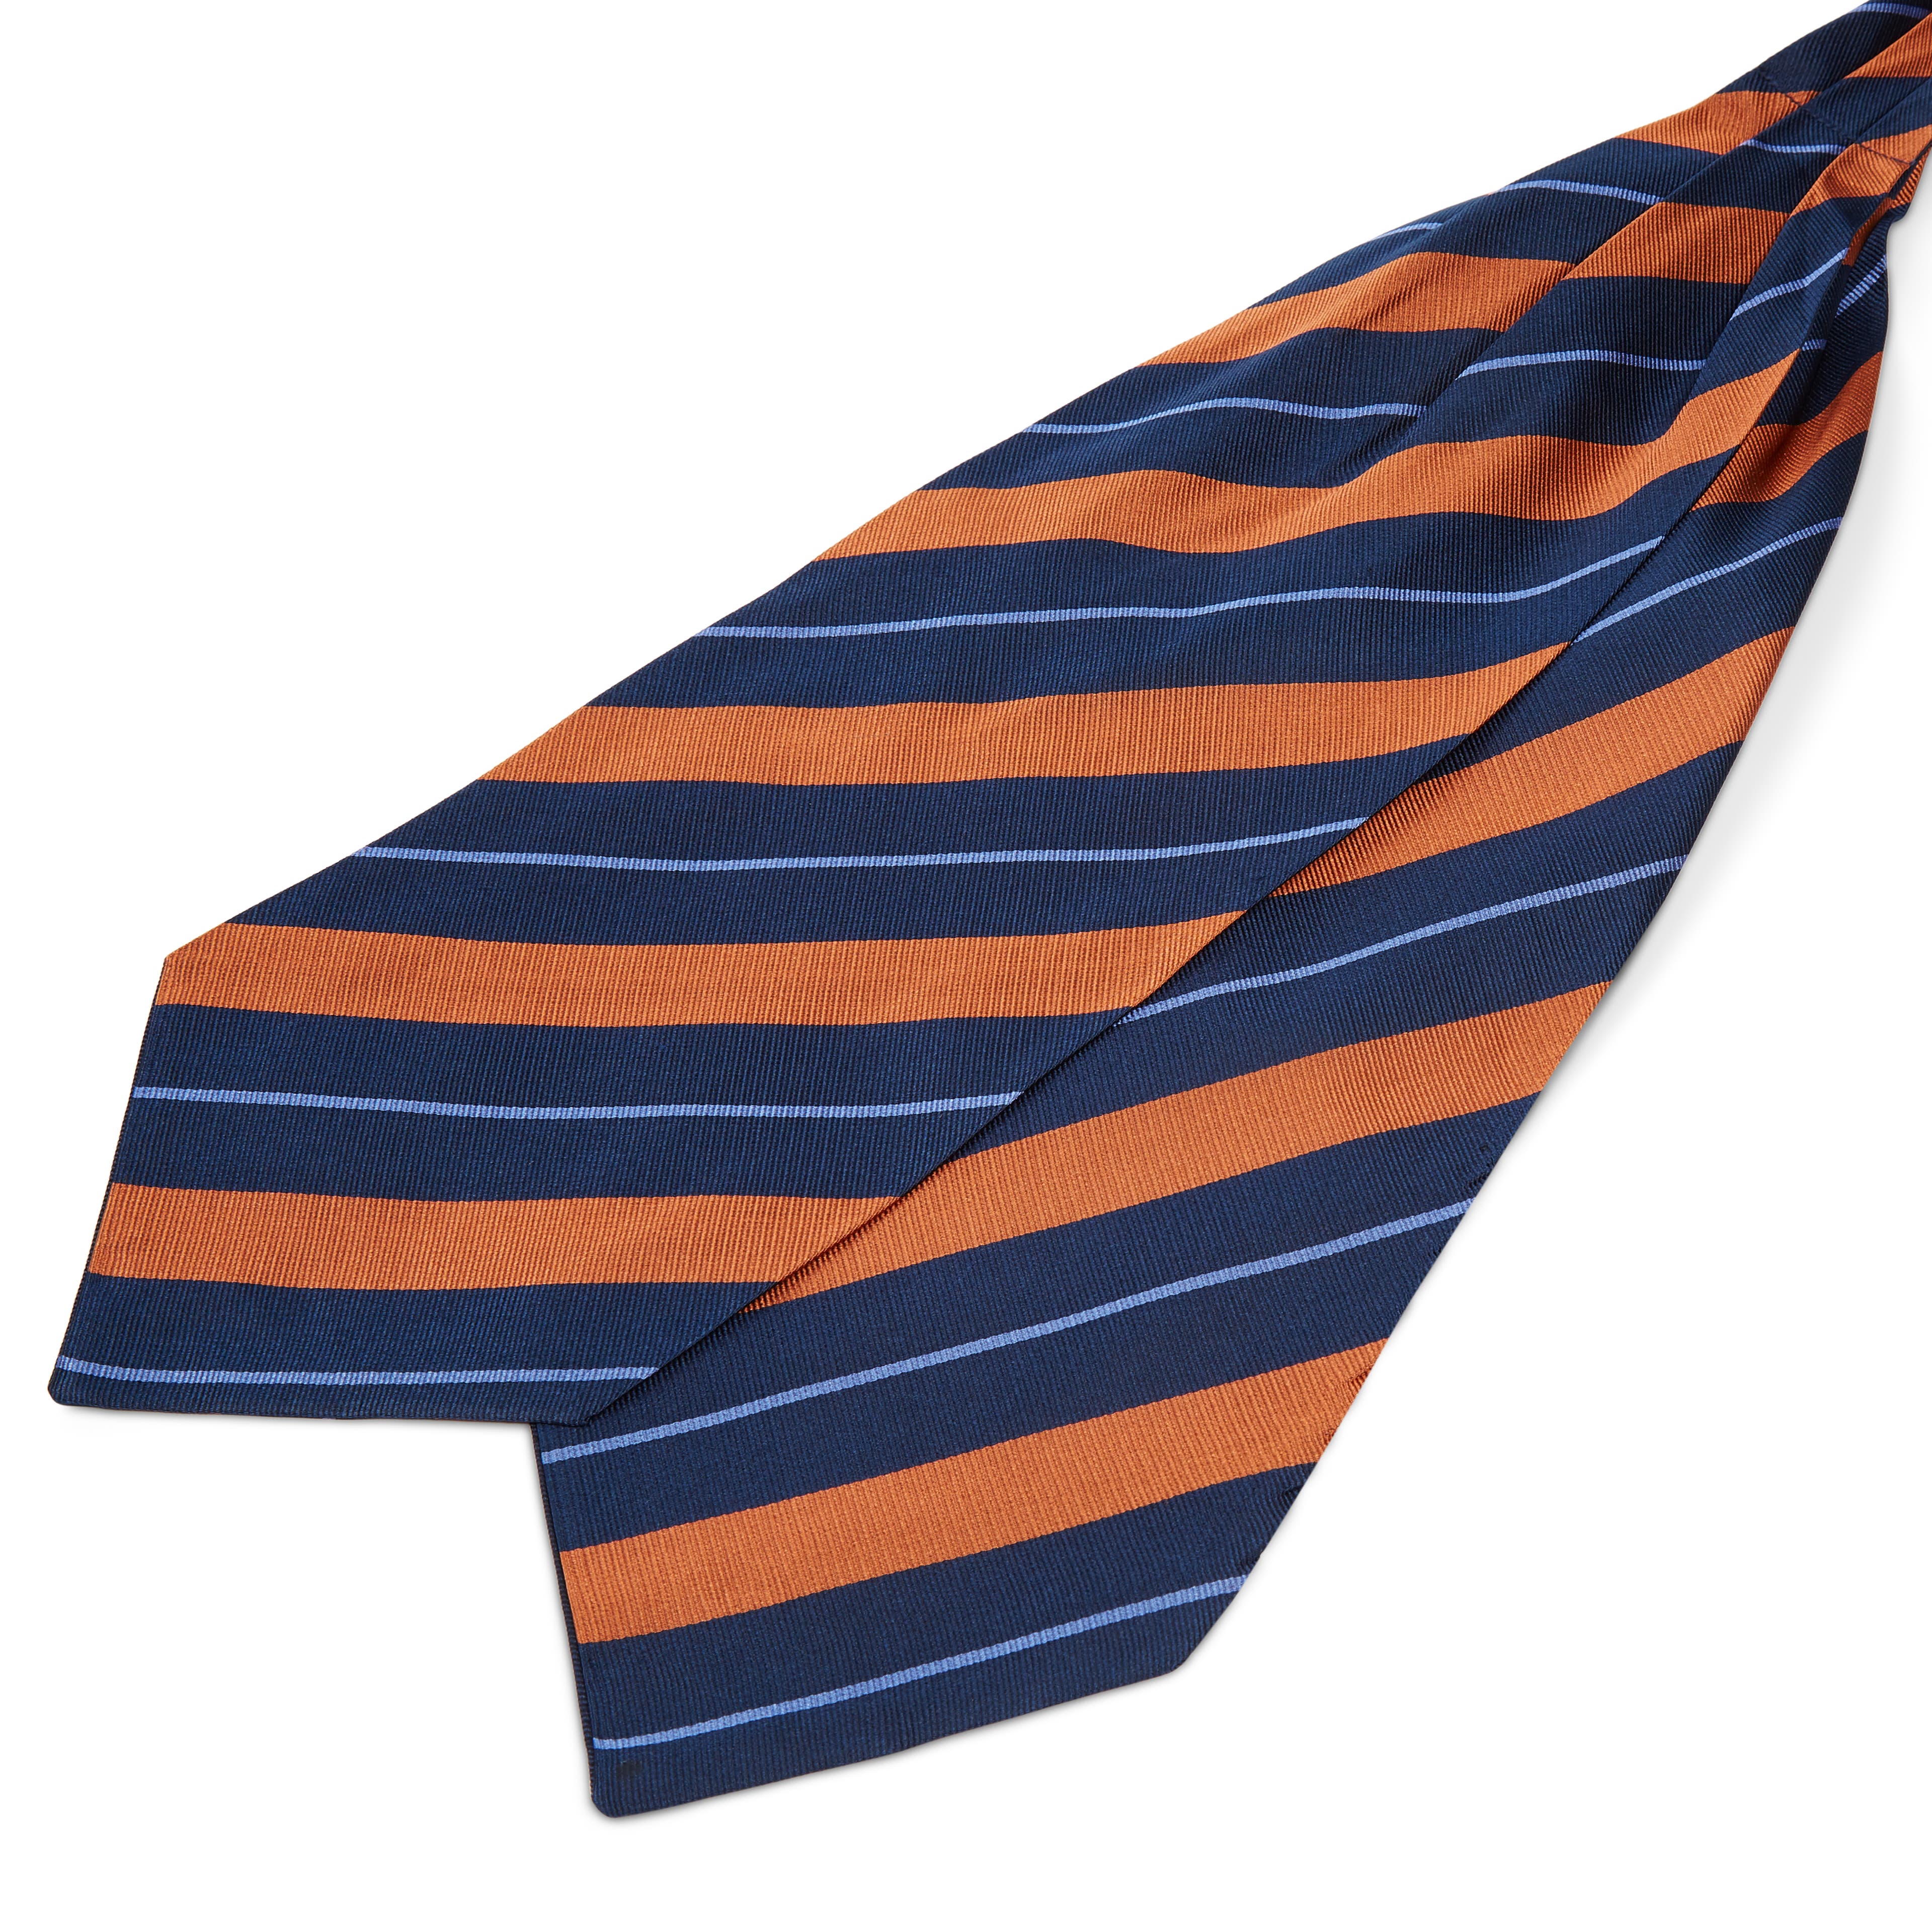 Tengerészkék-narancs-pasztellkék csíkos selyem kravátli